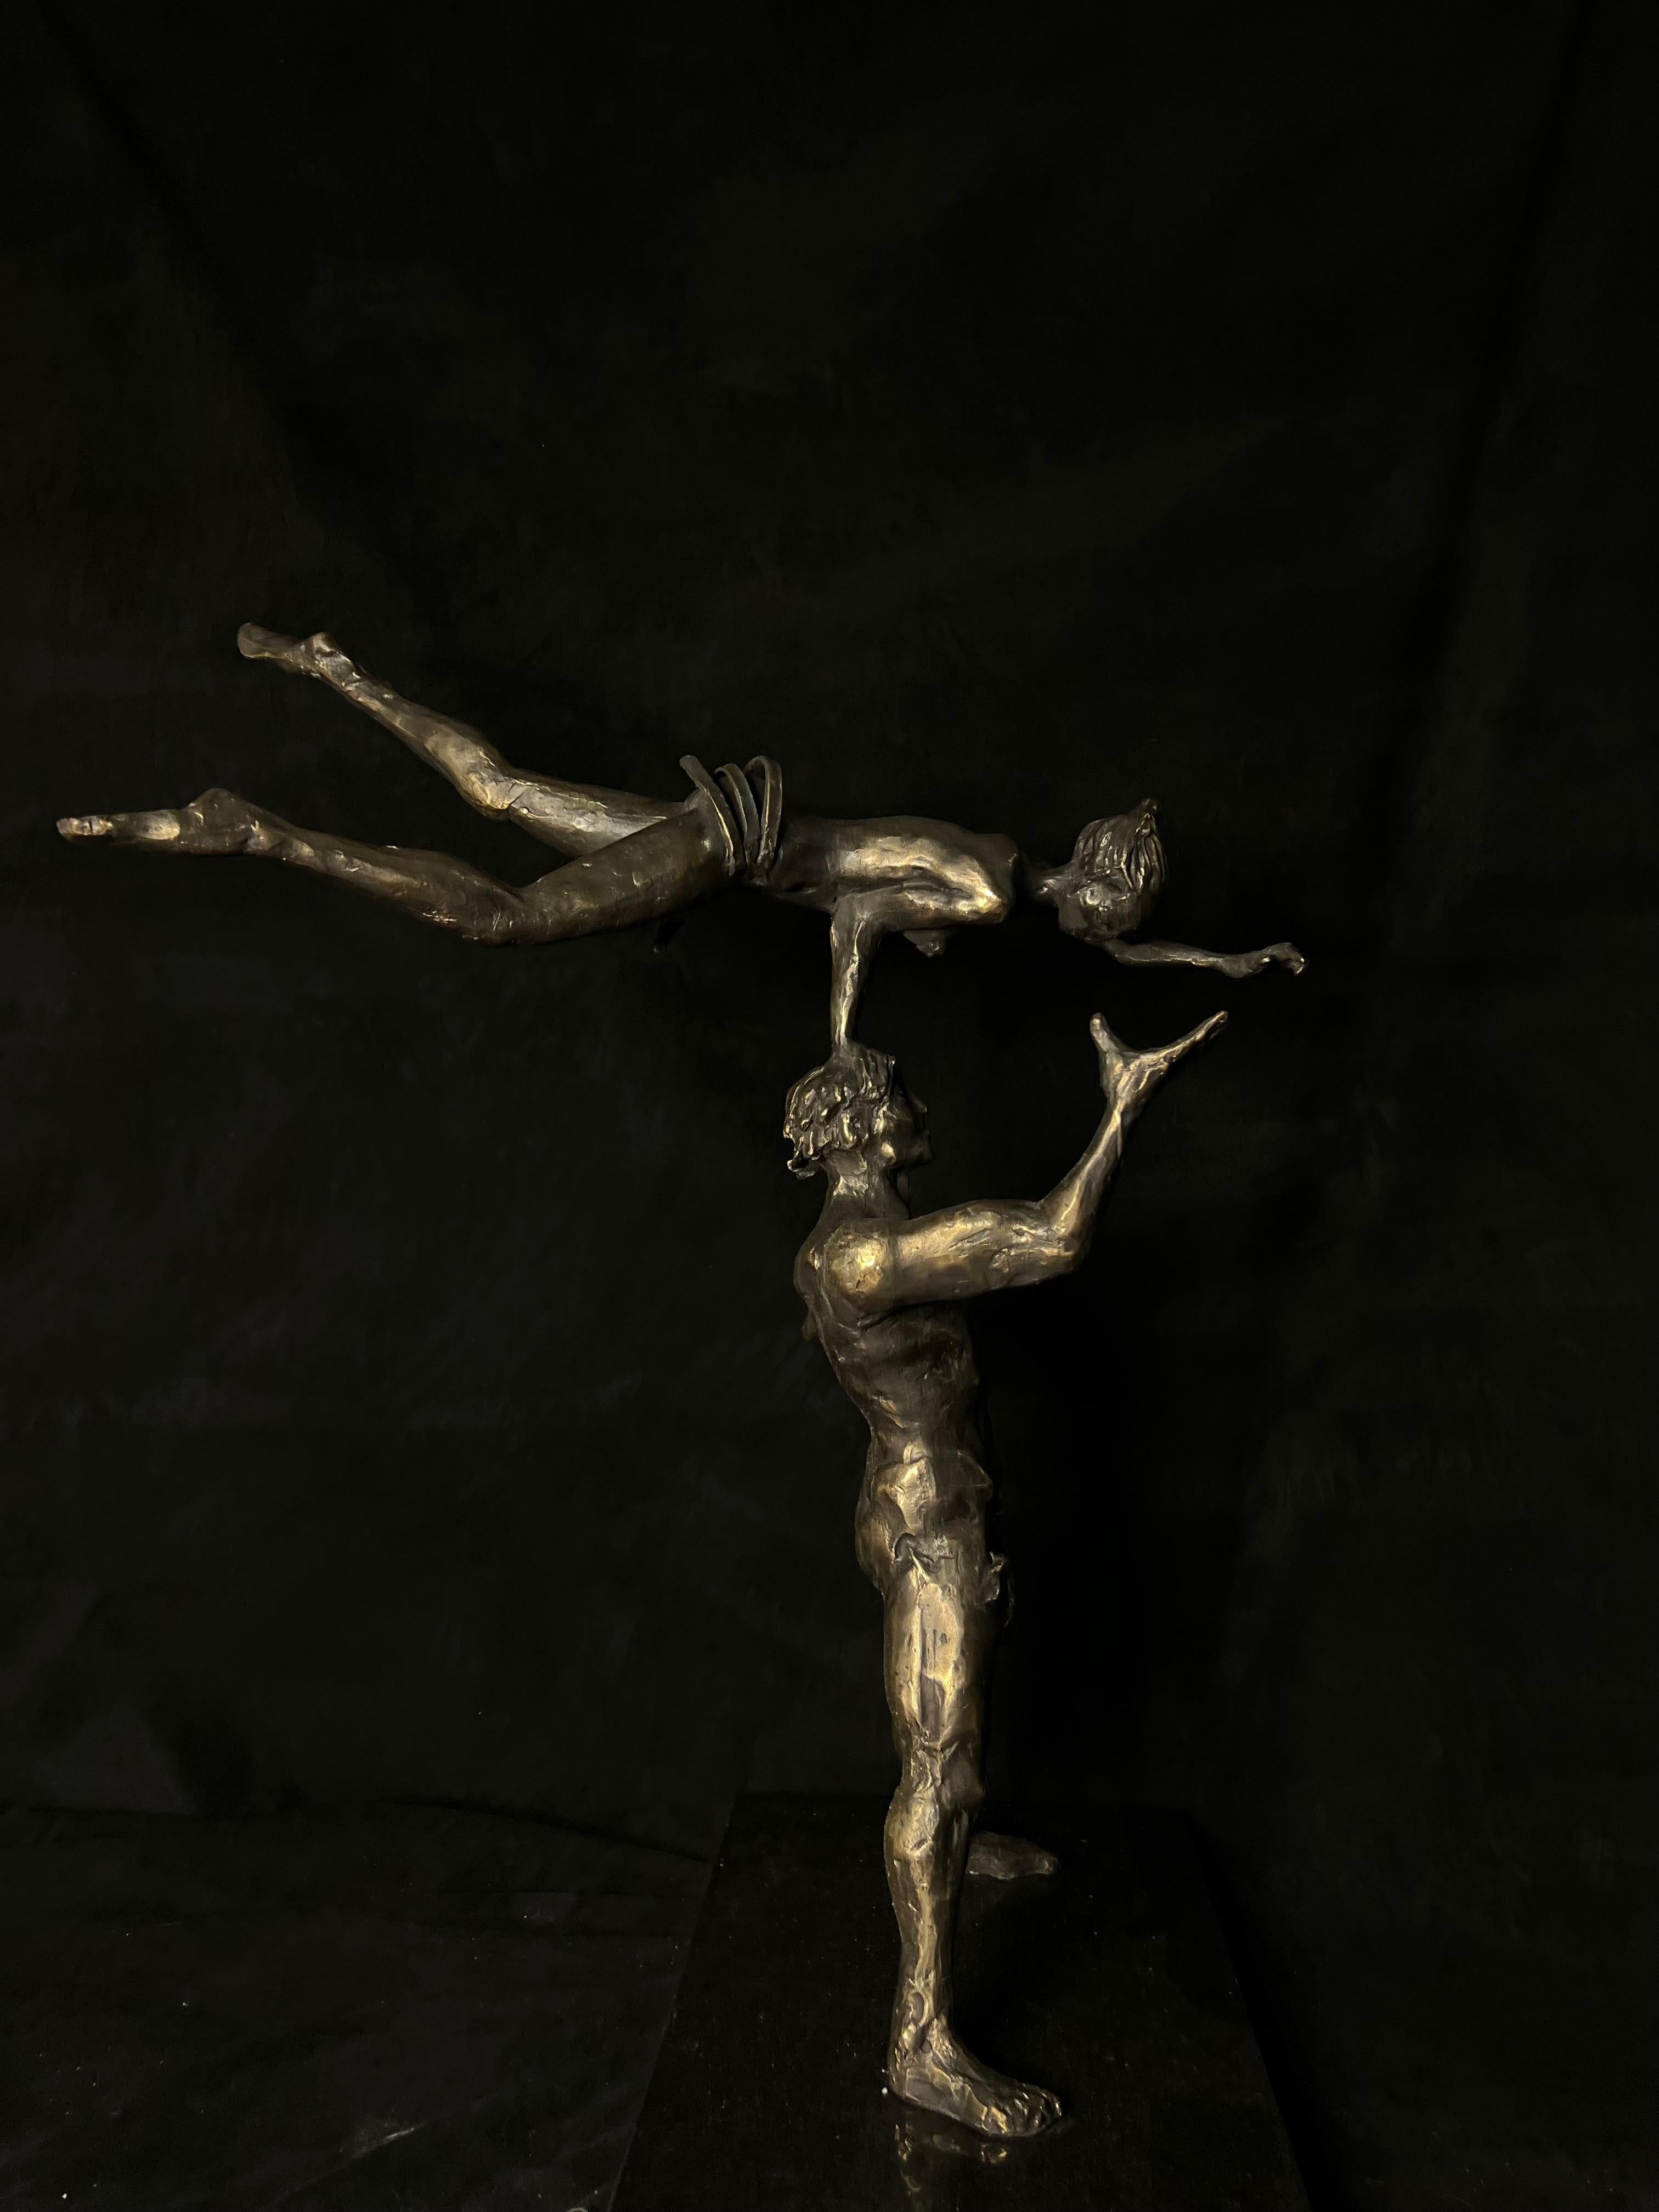 Bronzeskulptur aus der Tanzauswahl von Tauno Kangro. Dance Performance nackt aus Bronze.